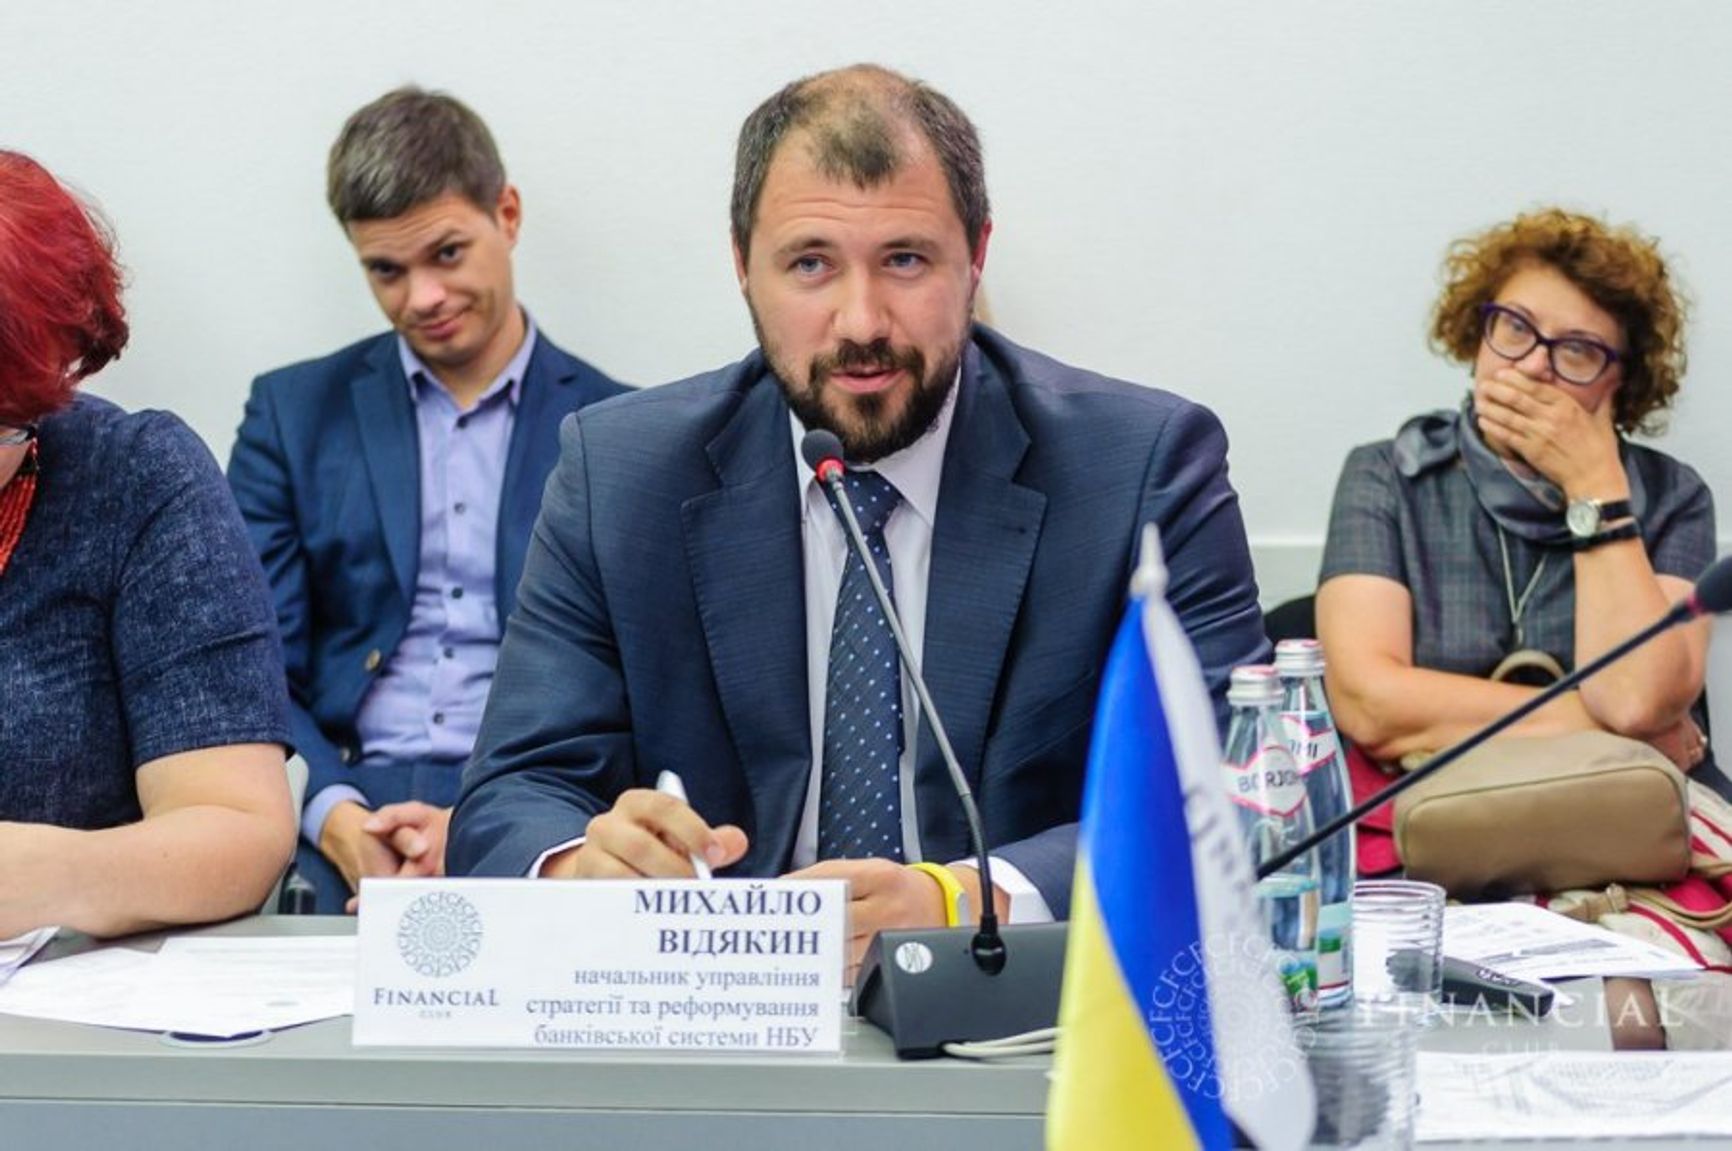 Михаил Видякин: «За три года Украина перешла от олигархического финансового рынка к прозрачному и цивилизованному»